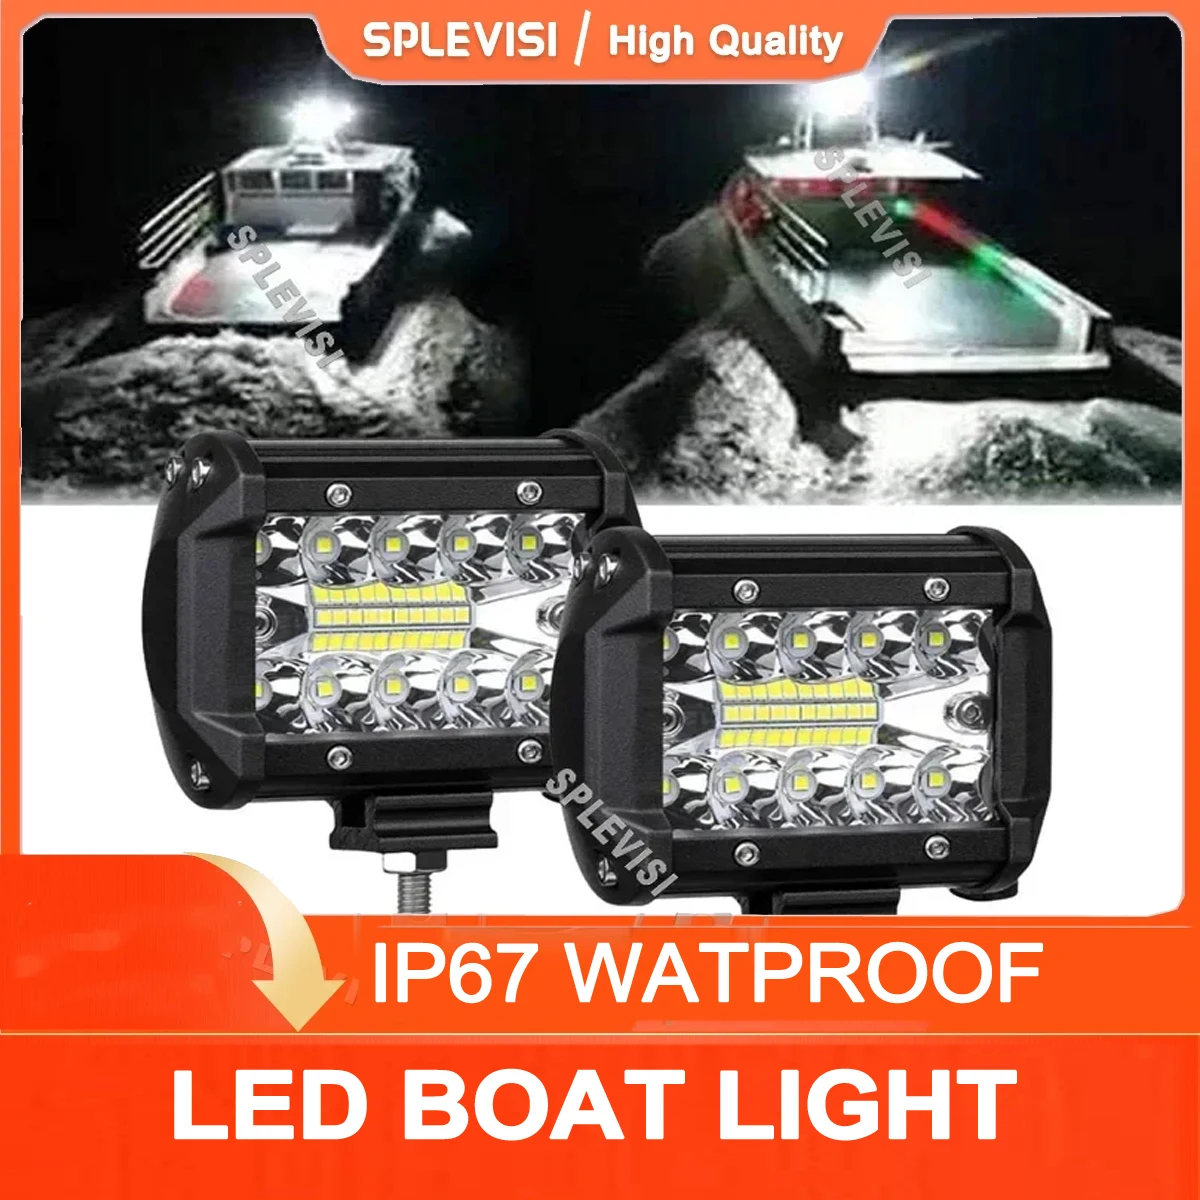 Pontoon Boat Docking Marine Led Lights for Kayak Bass Jon Fishing Boat Spreader Light T-top, Deck Stern/Navigation Lights 2pcs